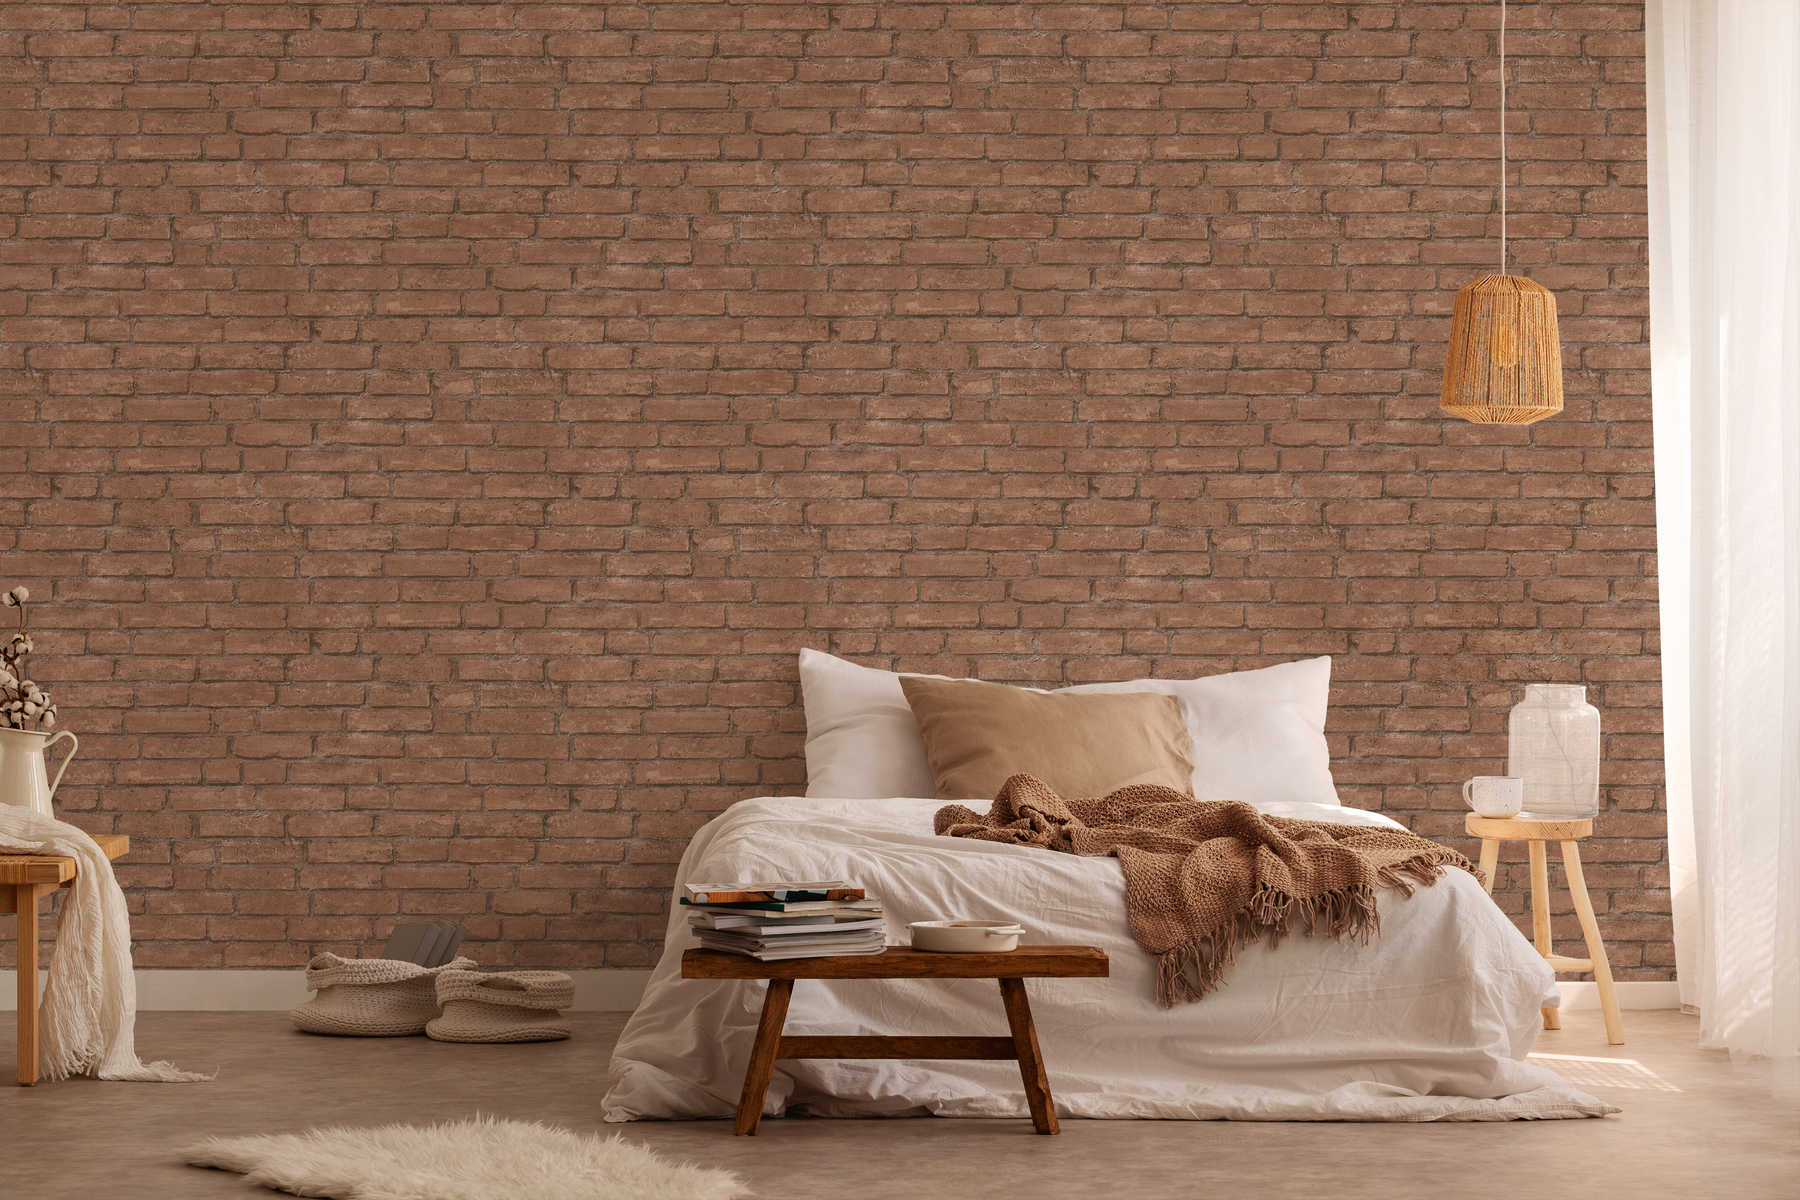             Stone wallpaper brick pattern, industrial & rustic - Brown, Orange
        